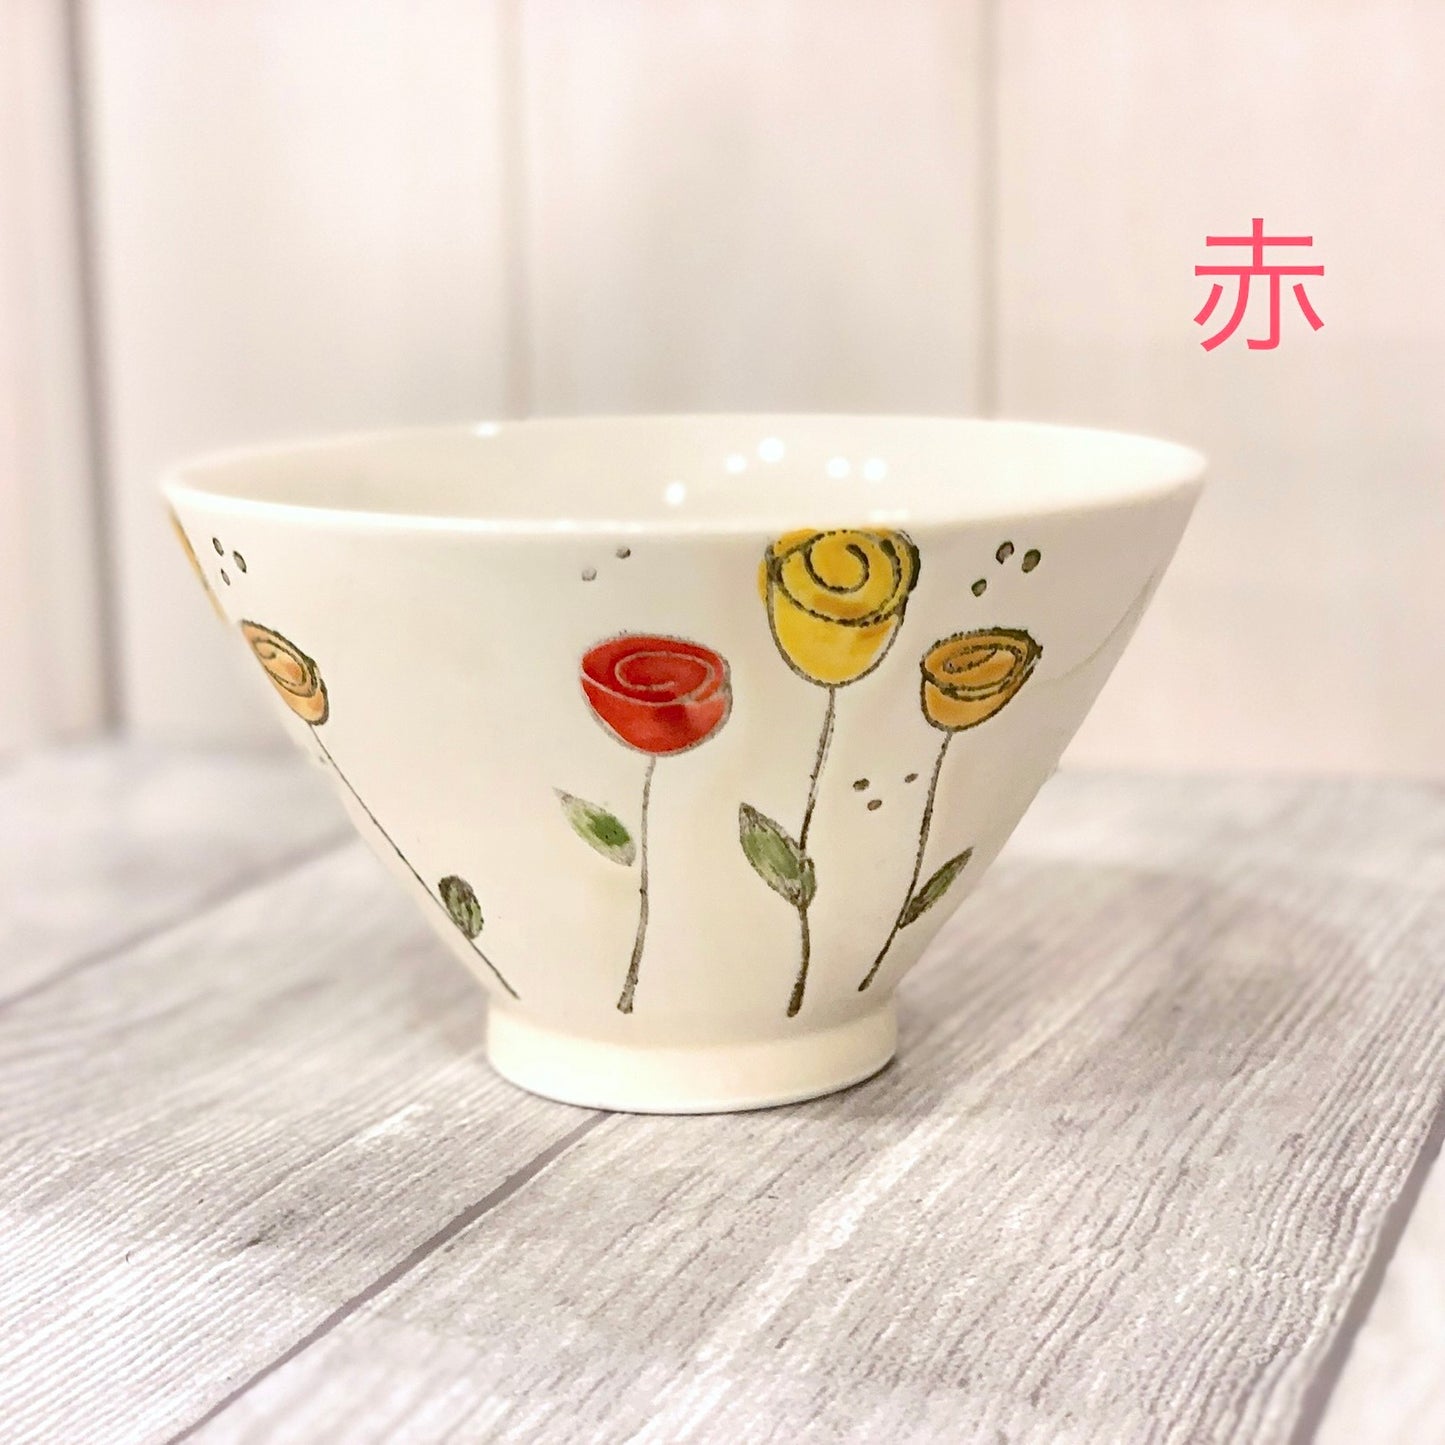 [Hasami ware] [Karen] [Rice bowl] 时尚成人彩色饭碗